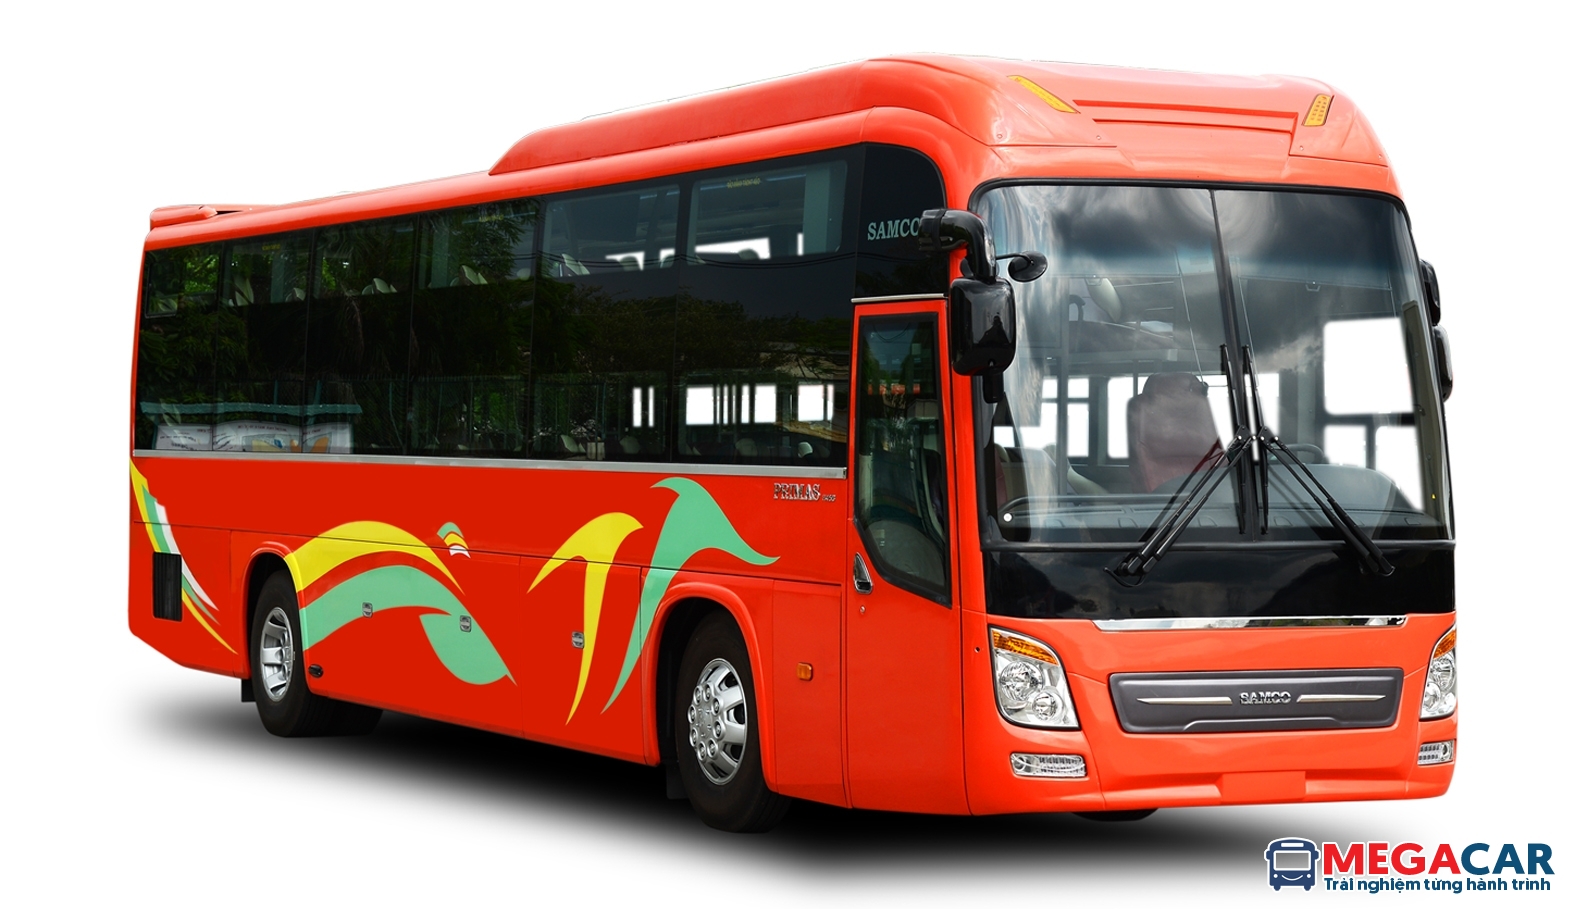 Danh sách xe khách Quảng Ninh đi Điện Biên uy tín cập nhật mới nhất - Megacar - Tổng đài đặt Xe Limousine và Xe giường nằm toàn quốc